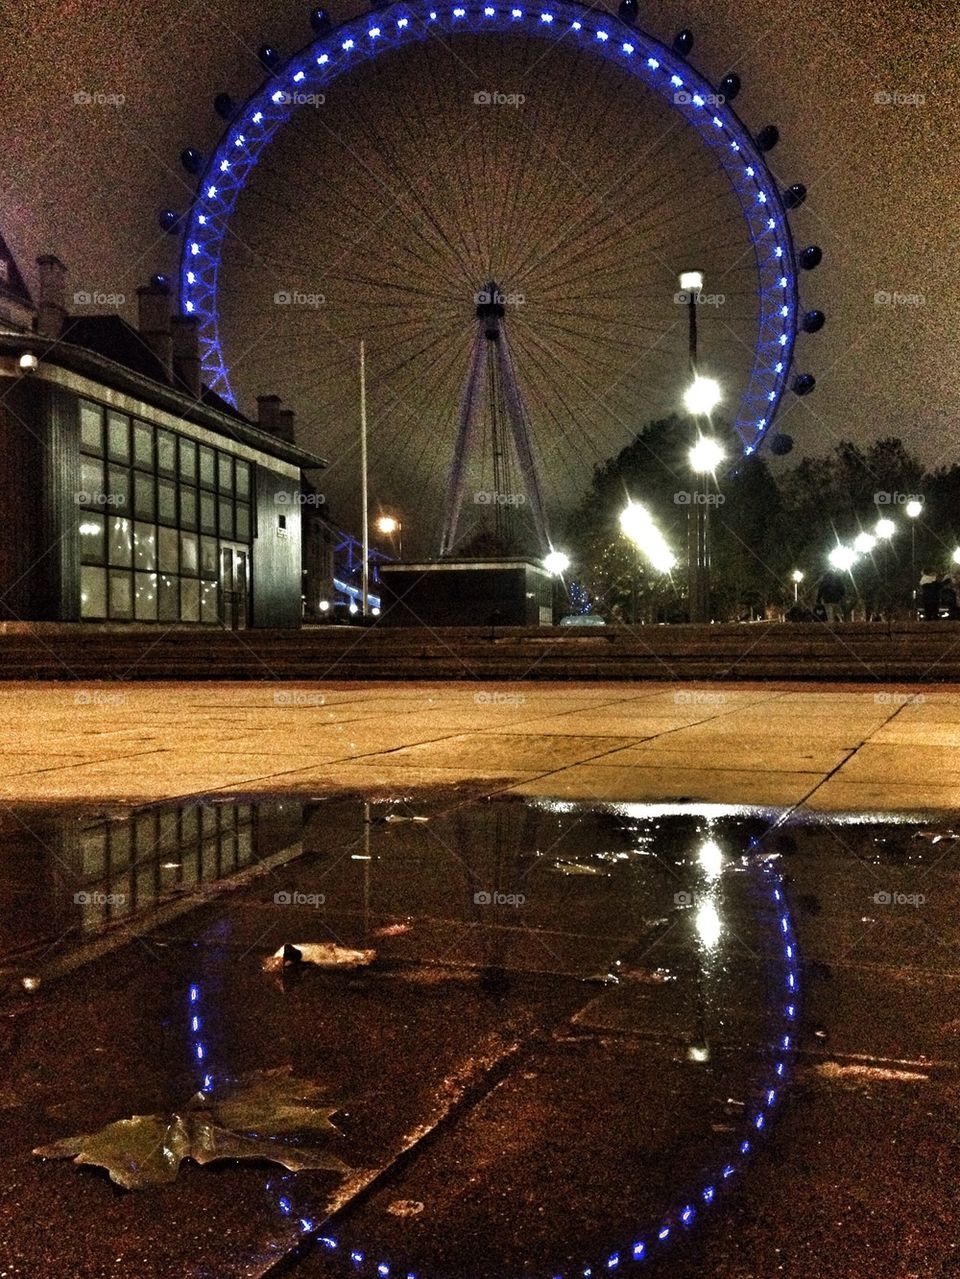 London eye at night